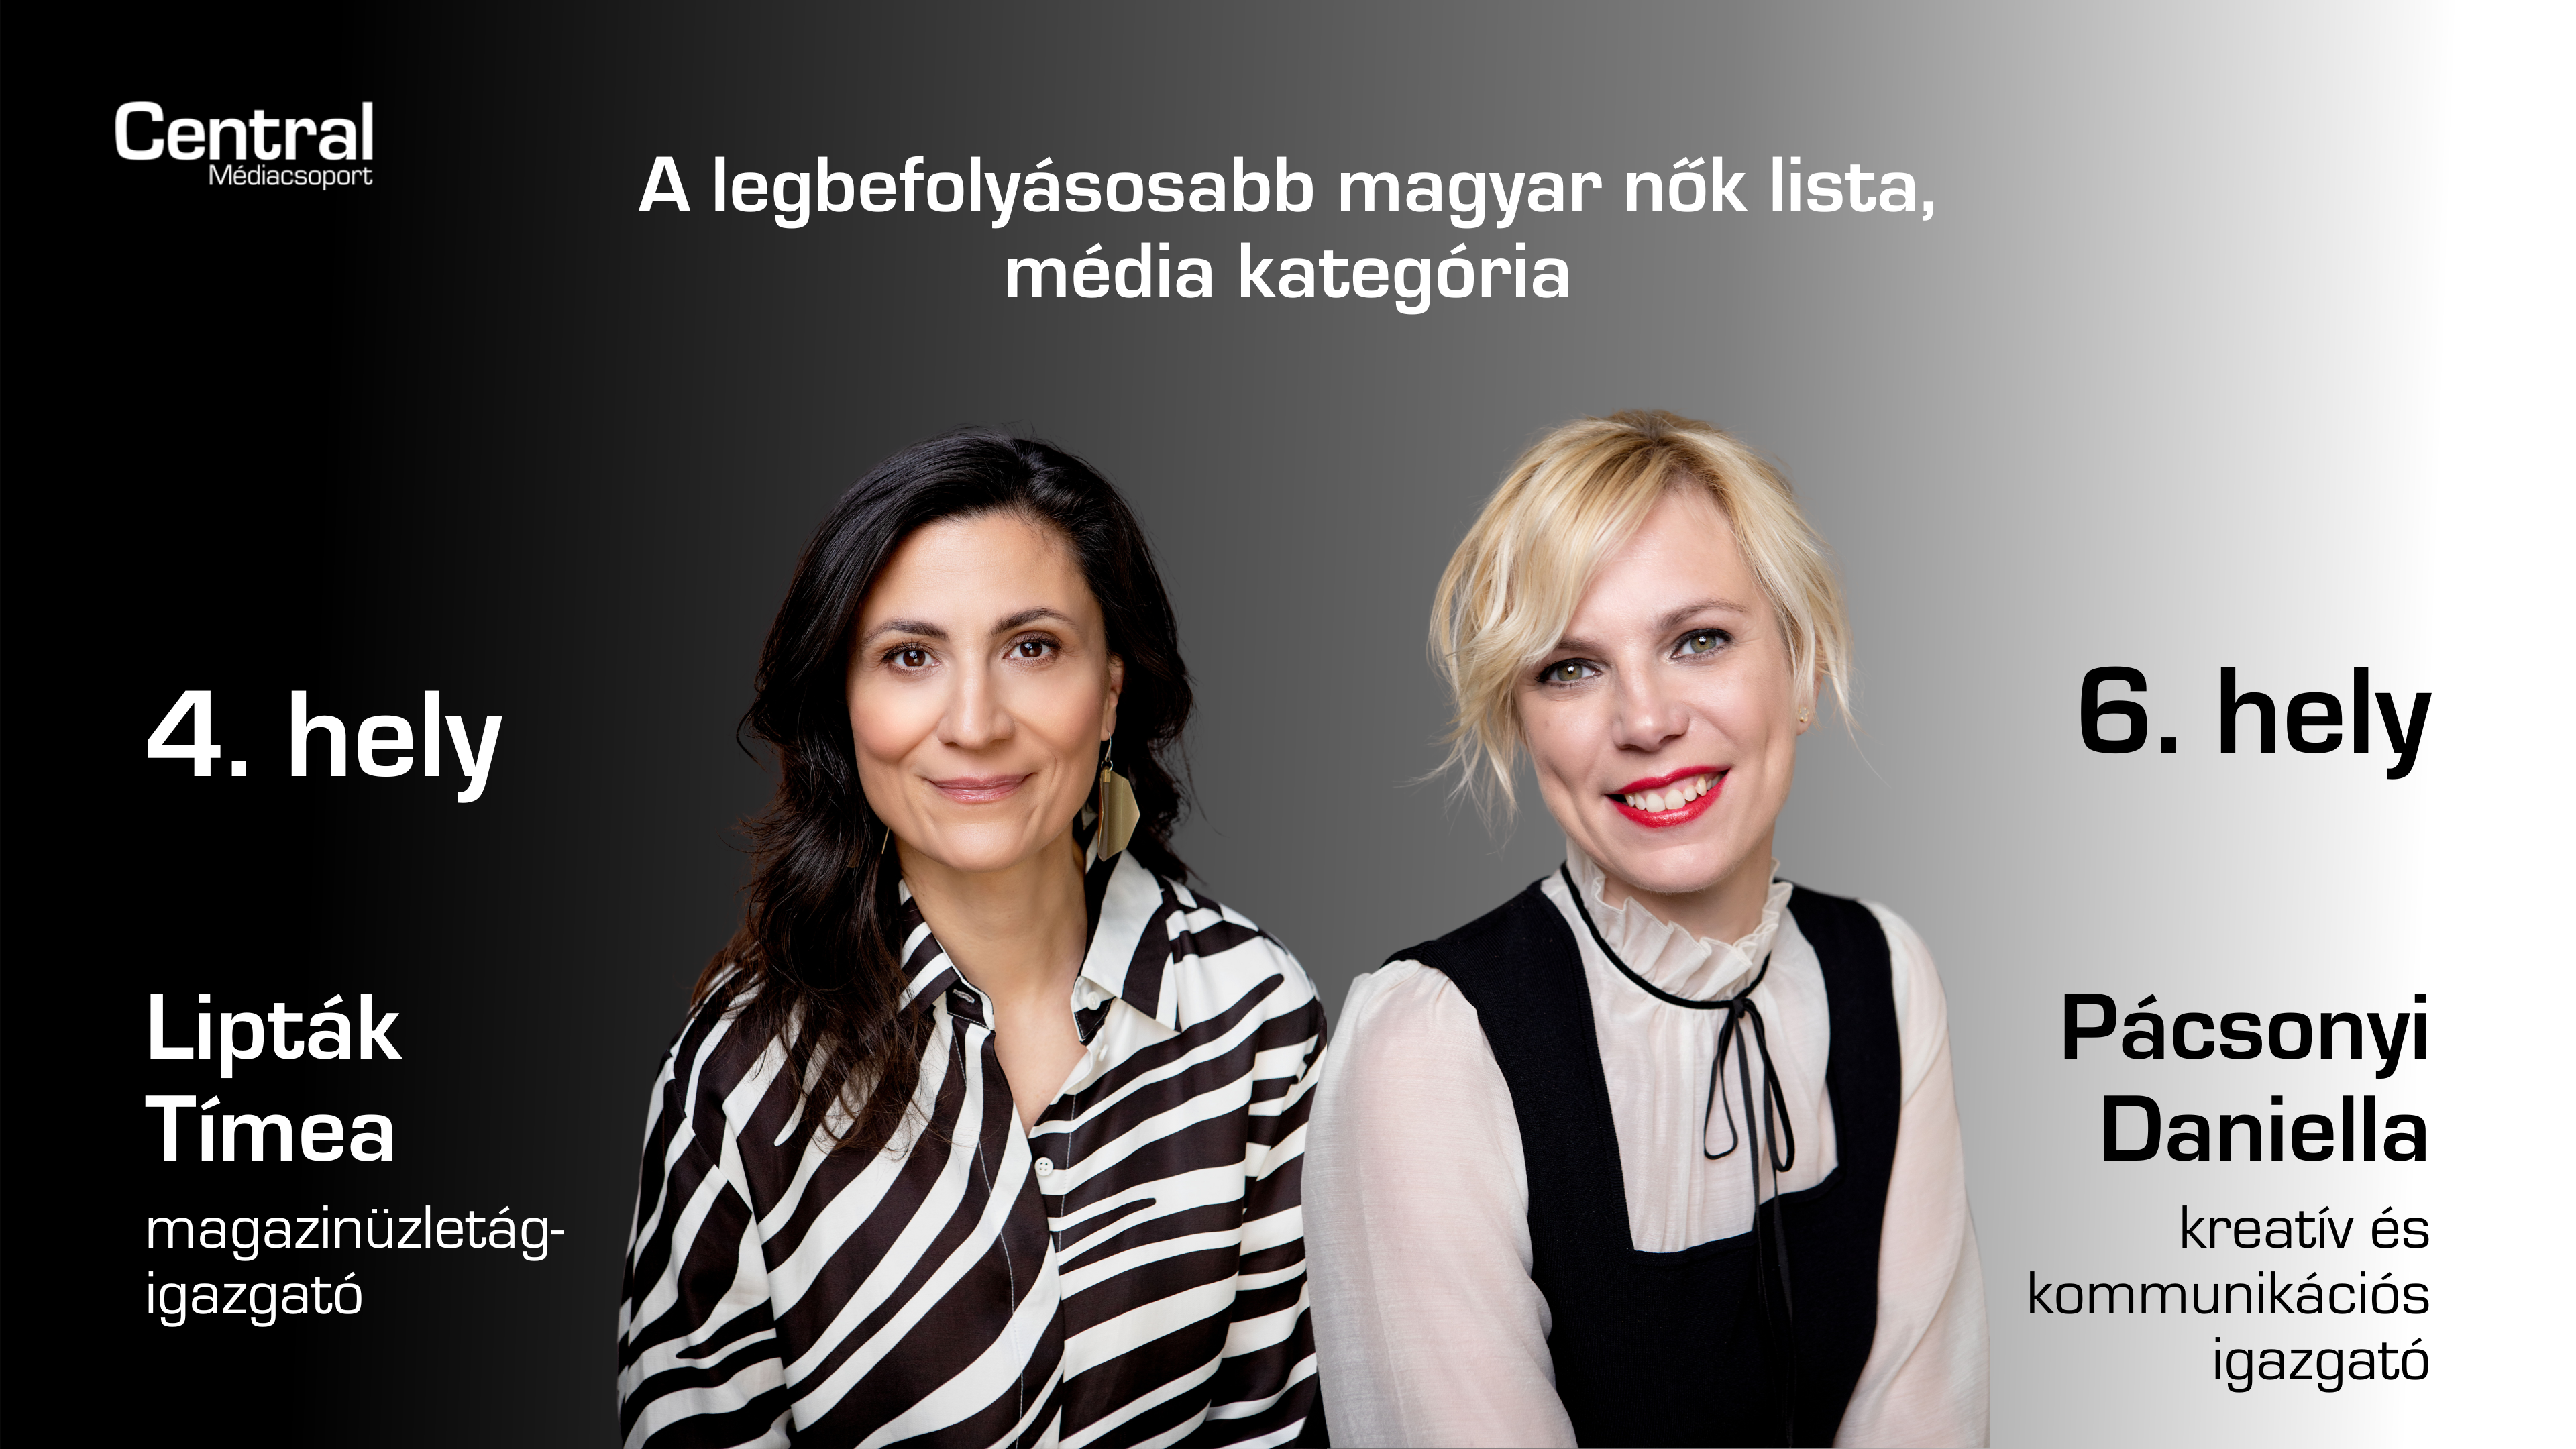 Két vezetőnk is a legbefolyásosabb magyar nők között szerepel